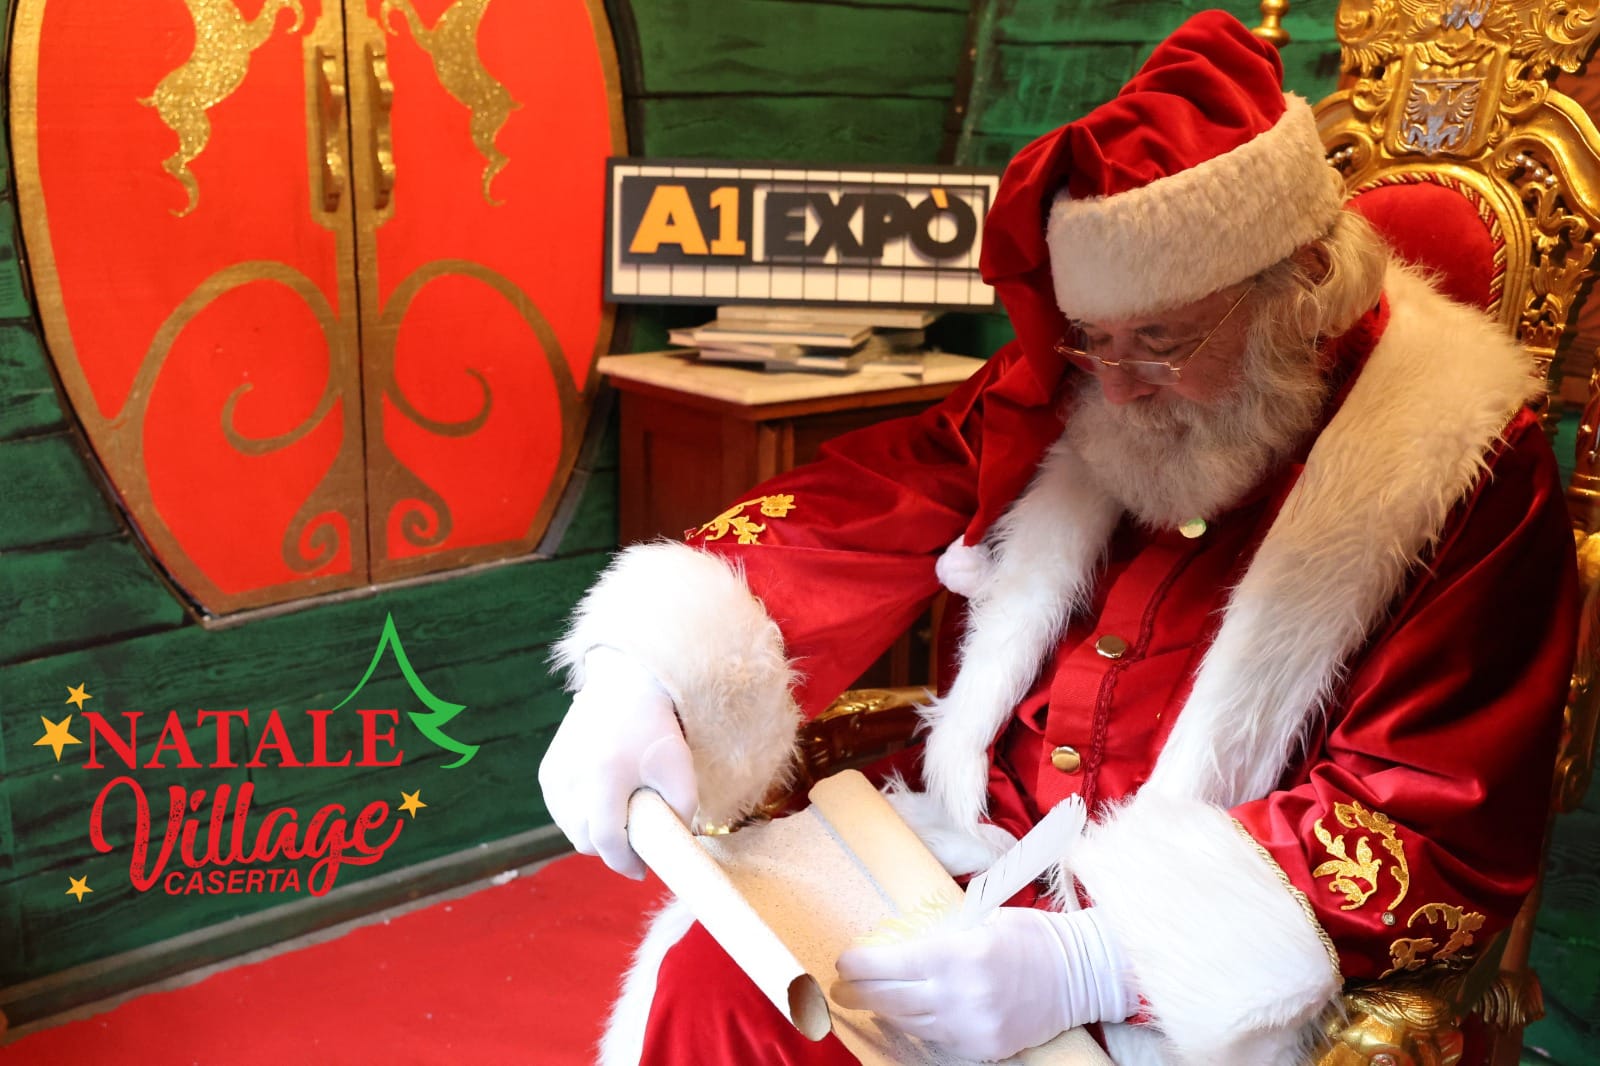 Natale Village: Dal 16 al 18 dicembre si conclude con il saluto a Babbo Natale